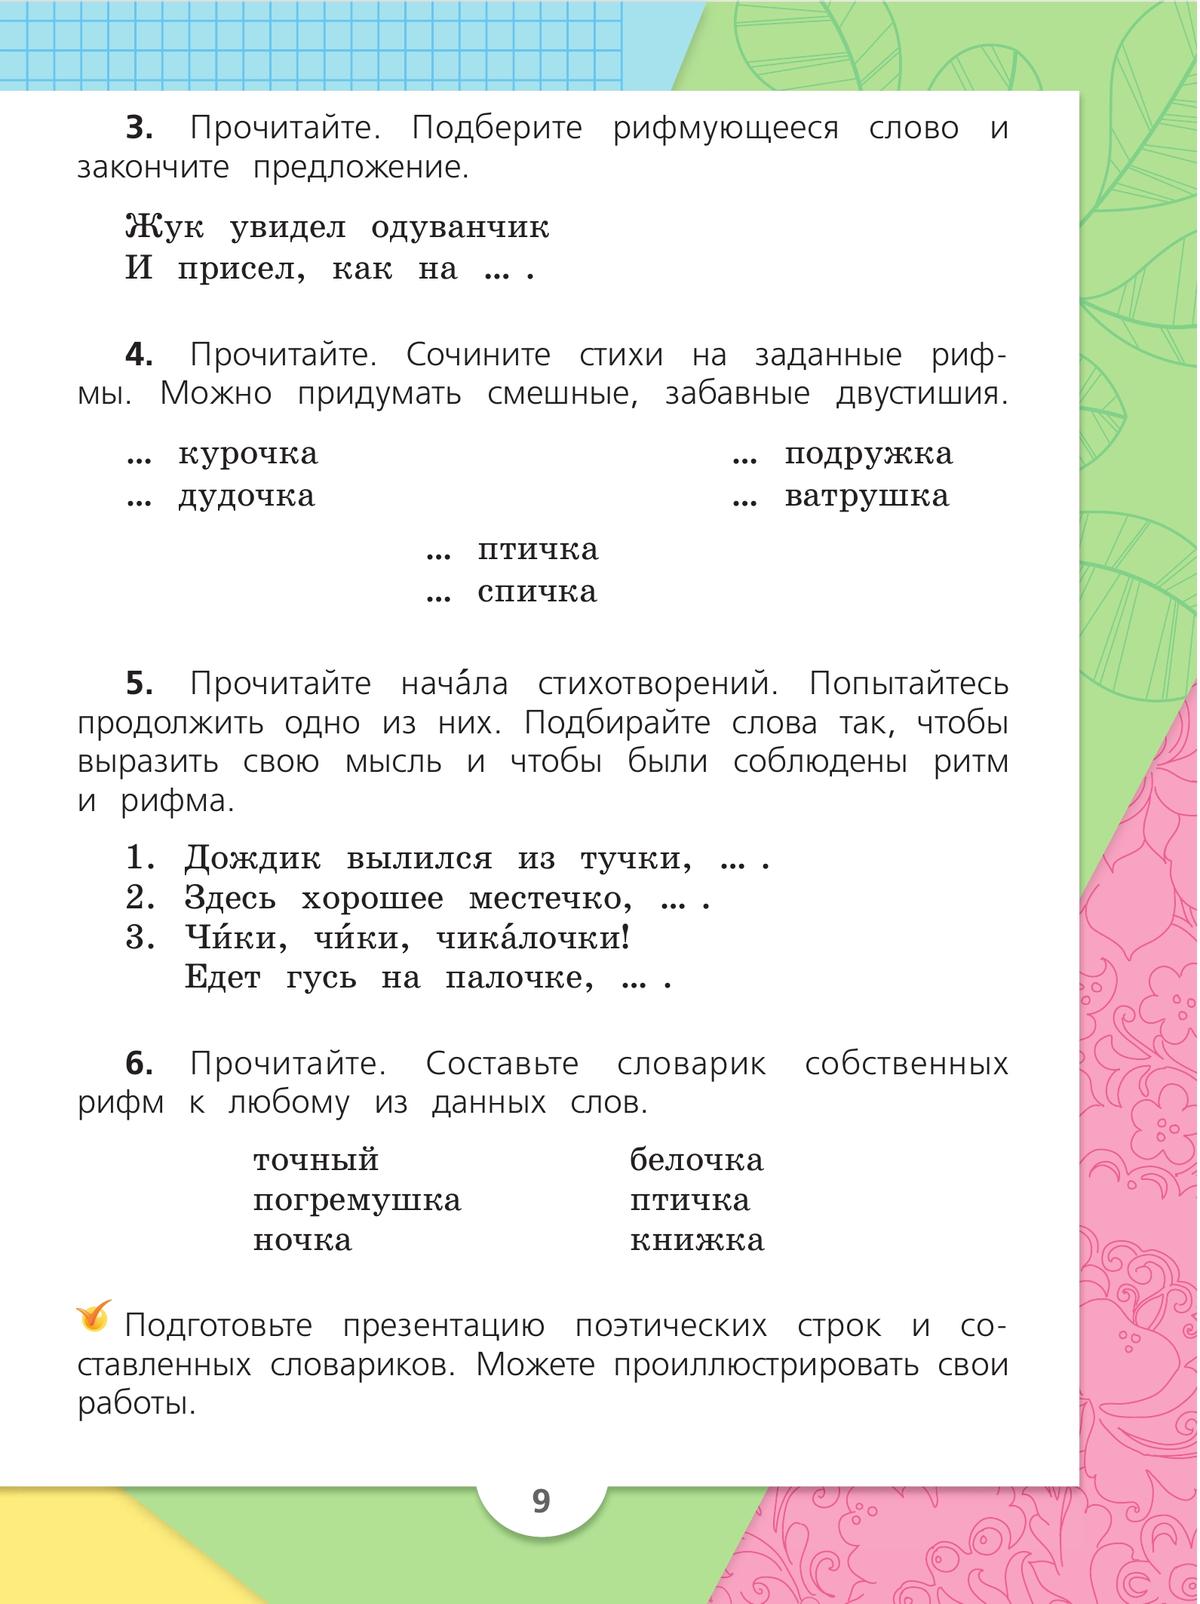 Русский язык. 2 класс. Учебник. В 2 ч. Часть 2 6